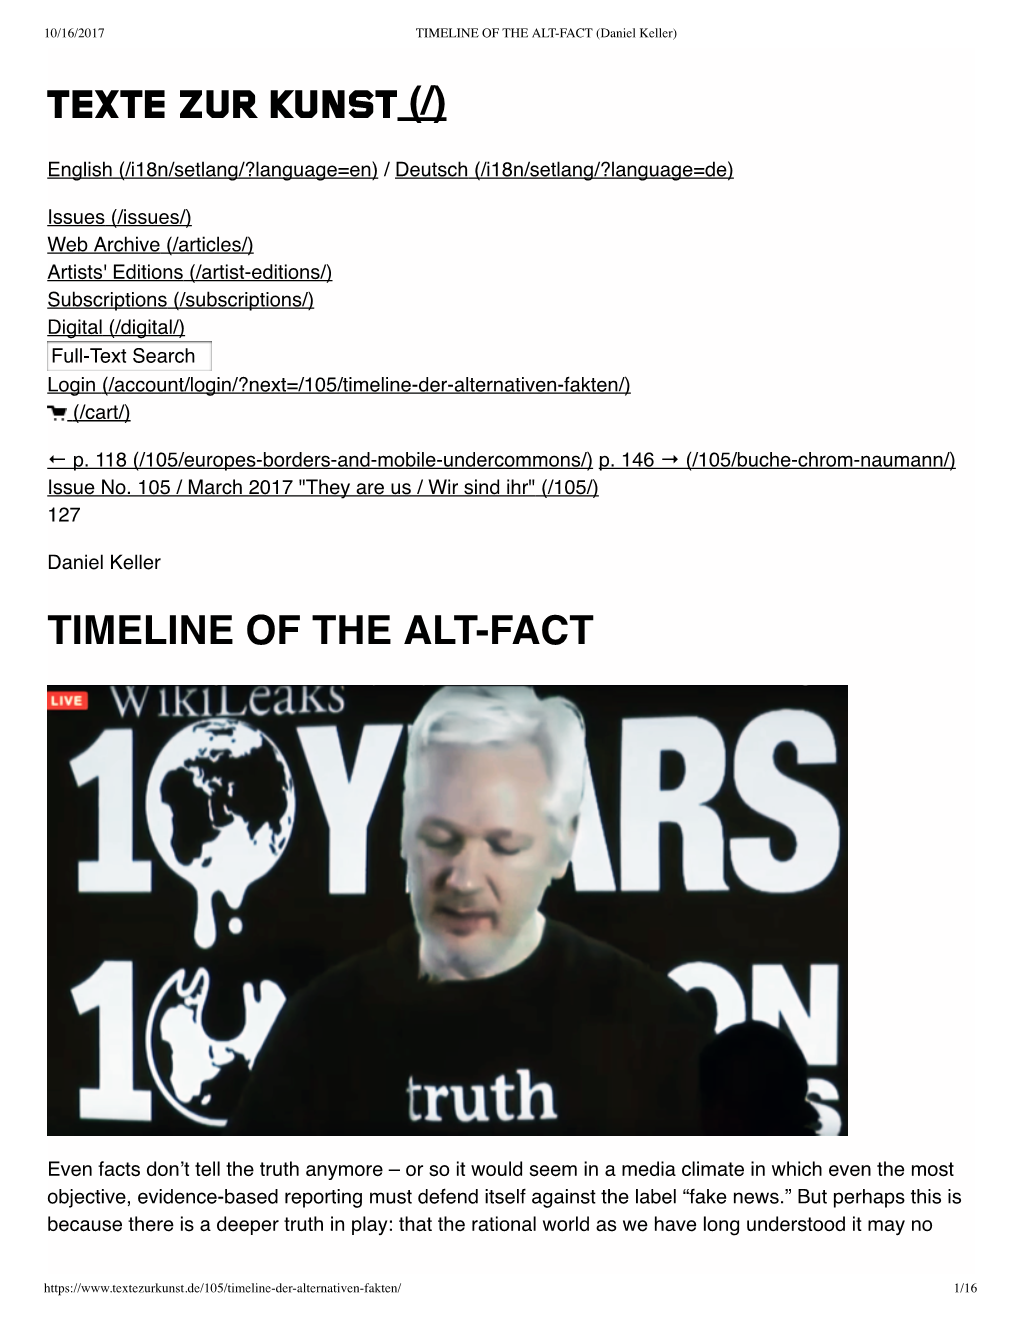 TIMELINE of the ALT-FACT (Daniel Keller)